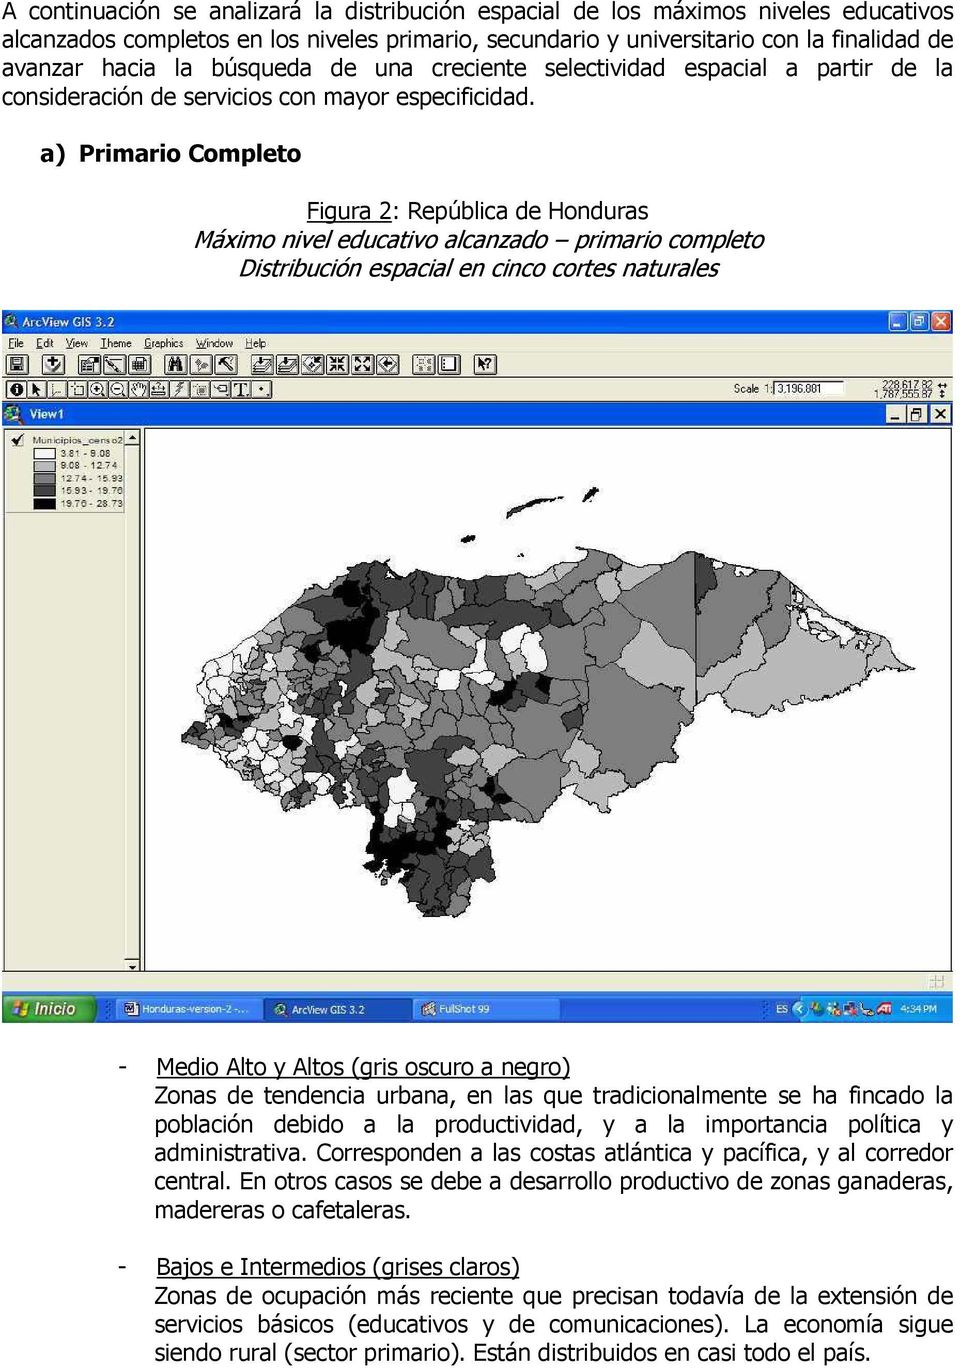 a) Primario Completo Figura 2: República de Honduras Máximo nivel educativo alcanzado primario completo Distribución espacial en cinco cortes naturales - Medio Alto y Altos (gris oscuro a negro)